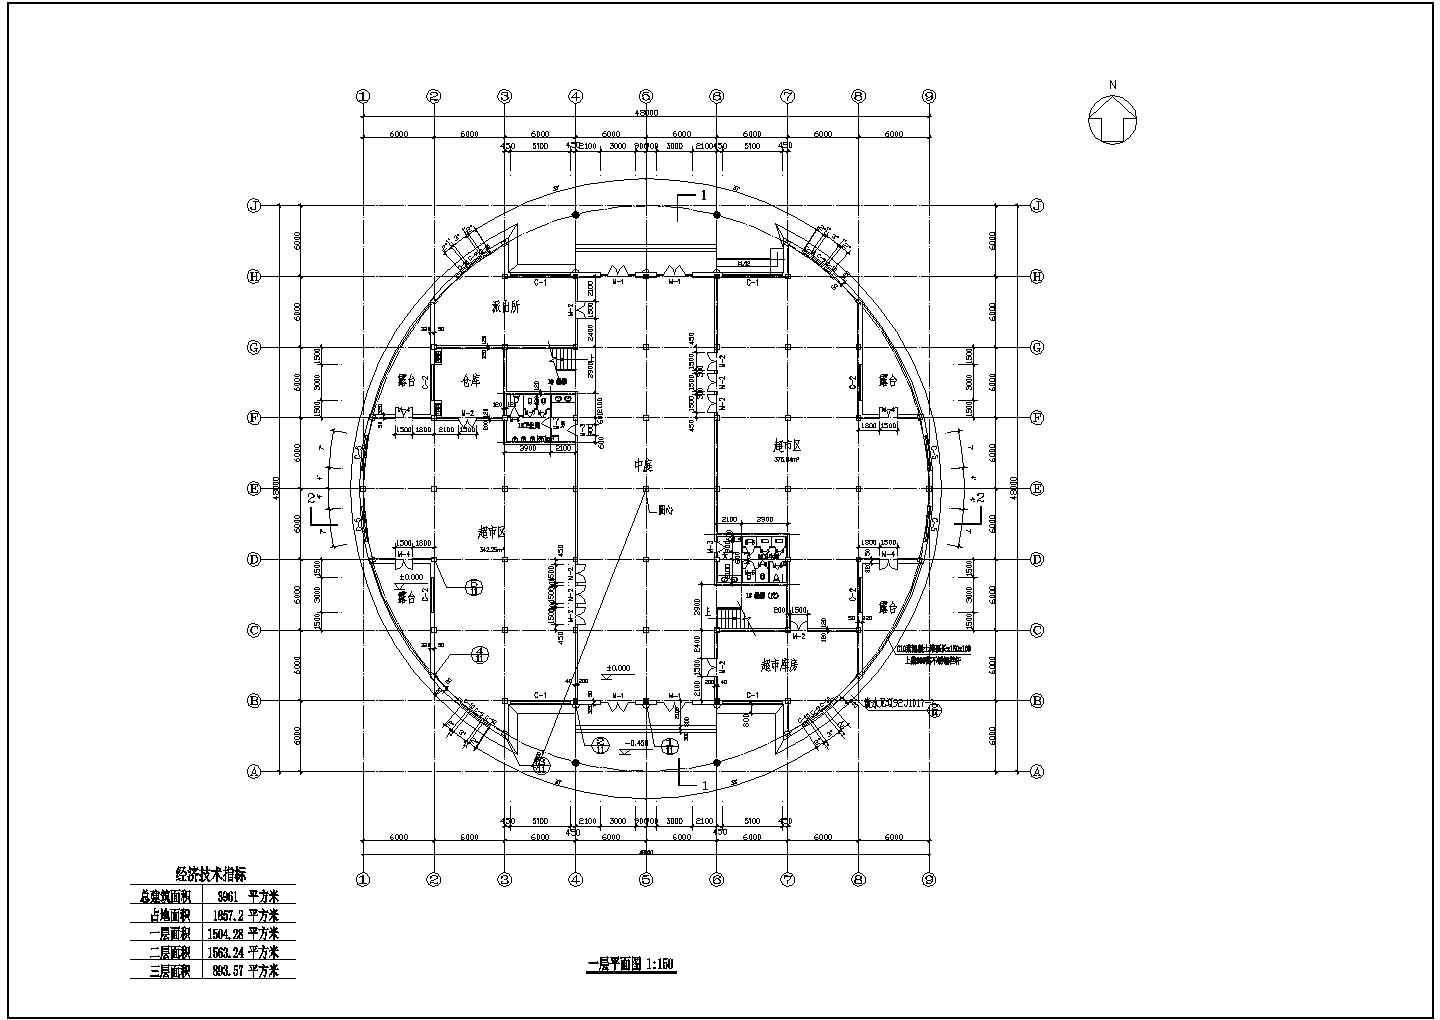 金河住宅小区社区会所建筑设计施工图